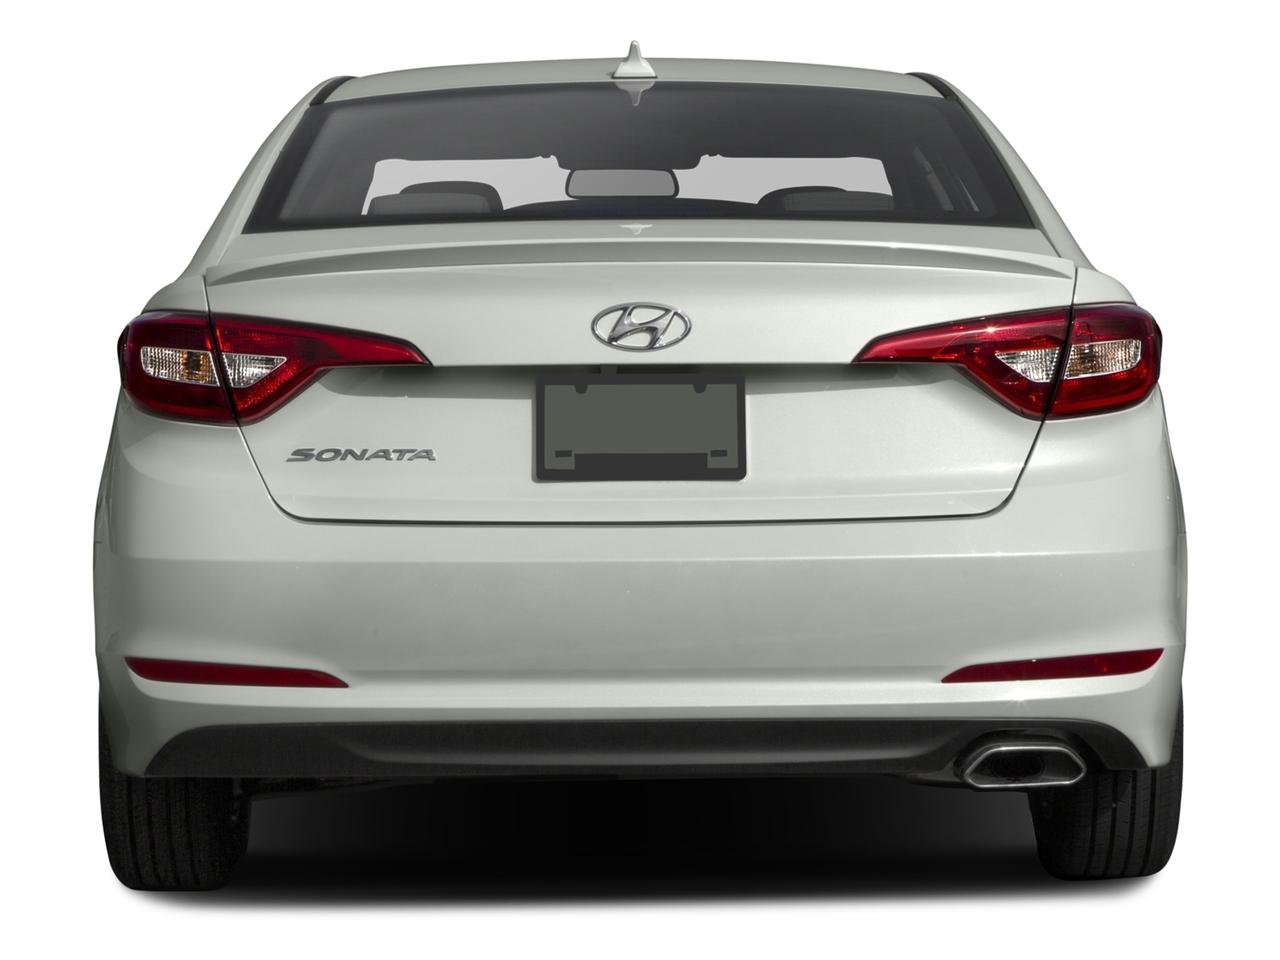 2016 Hyundai Sonata 4dr Sdn 2.4L SE Shale Gray Metallic 4dr Car. A ...